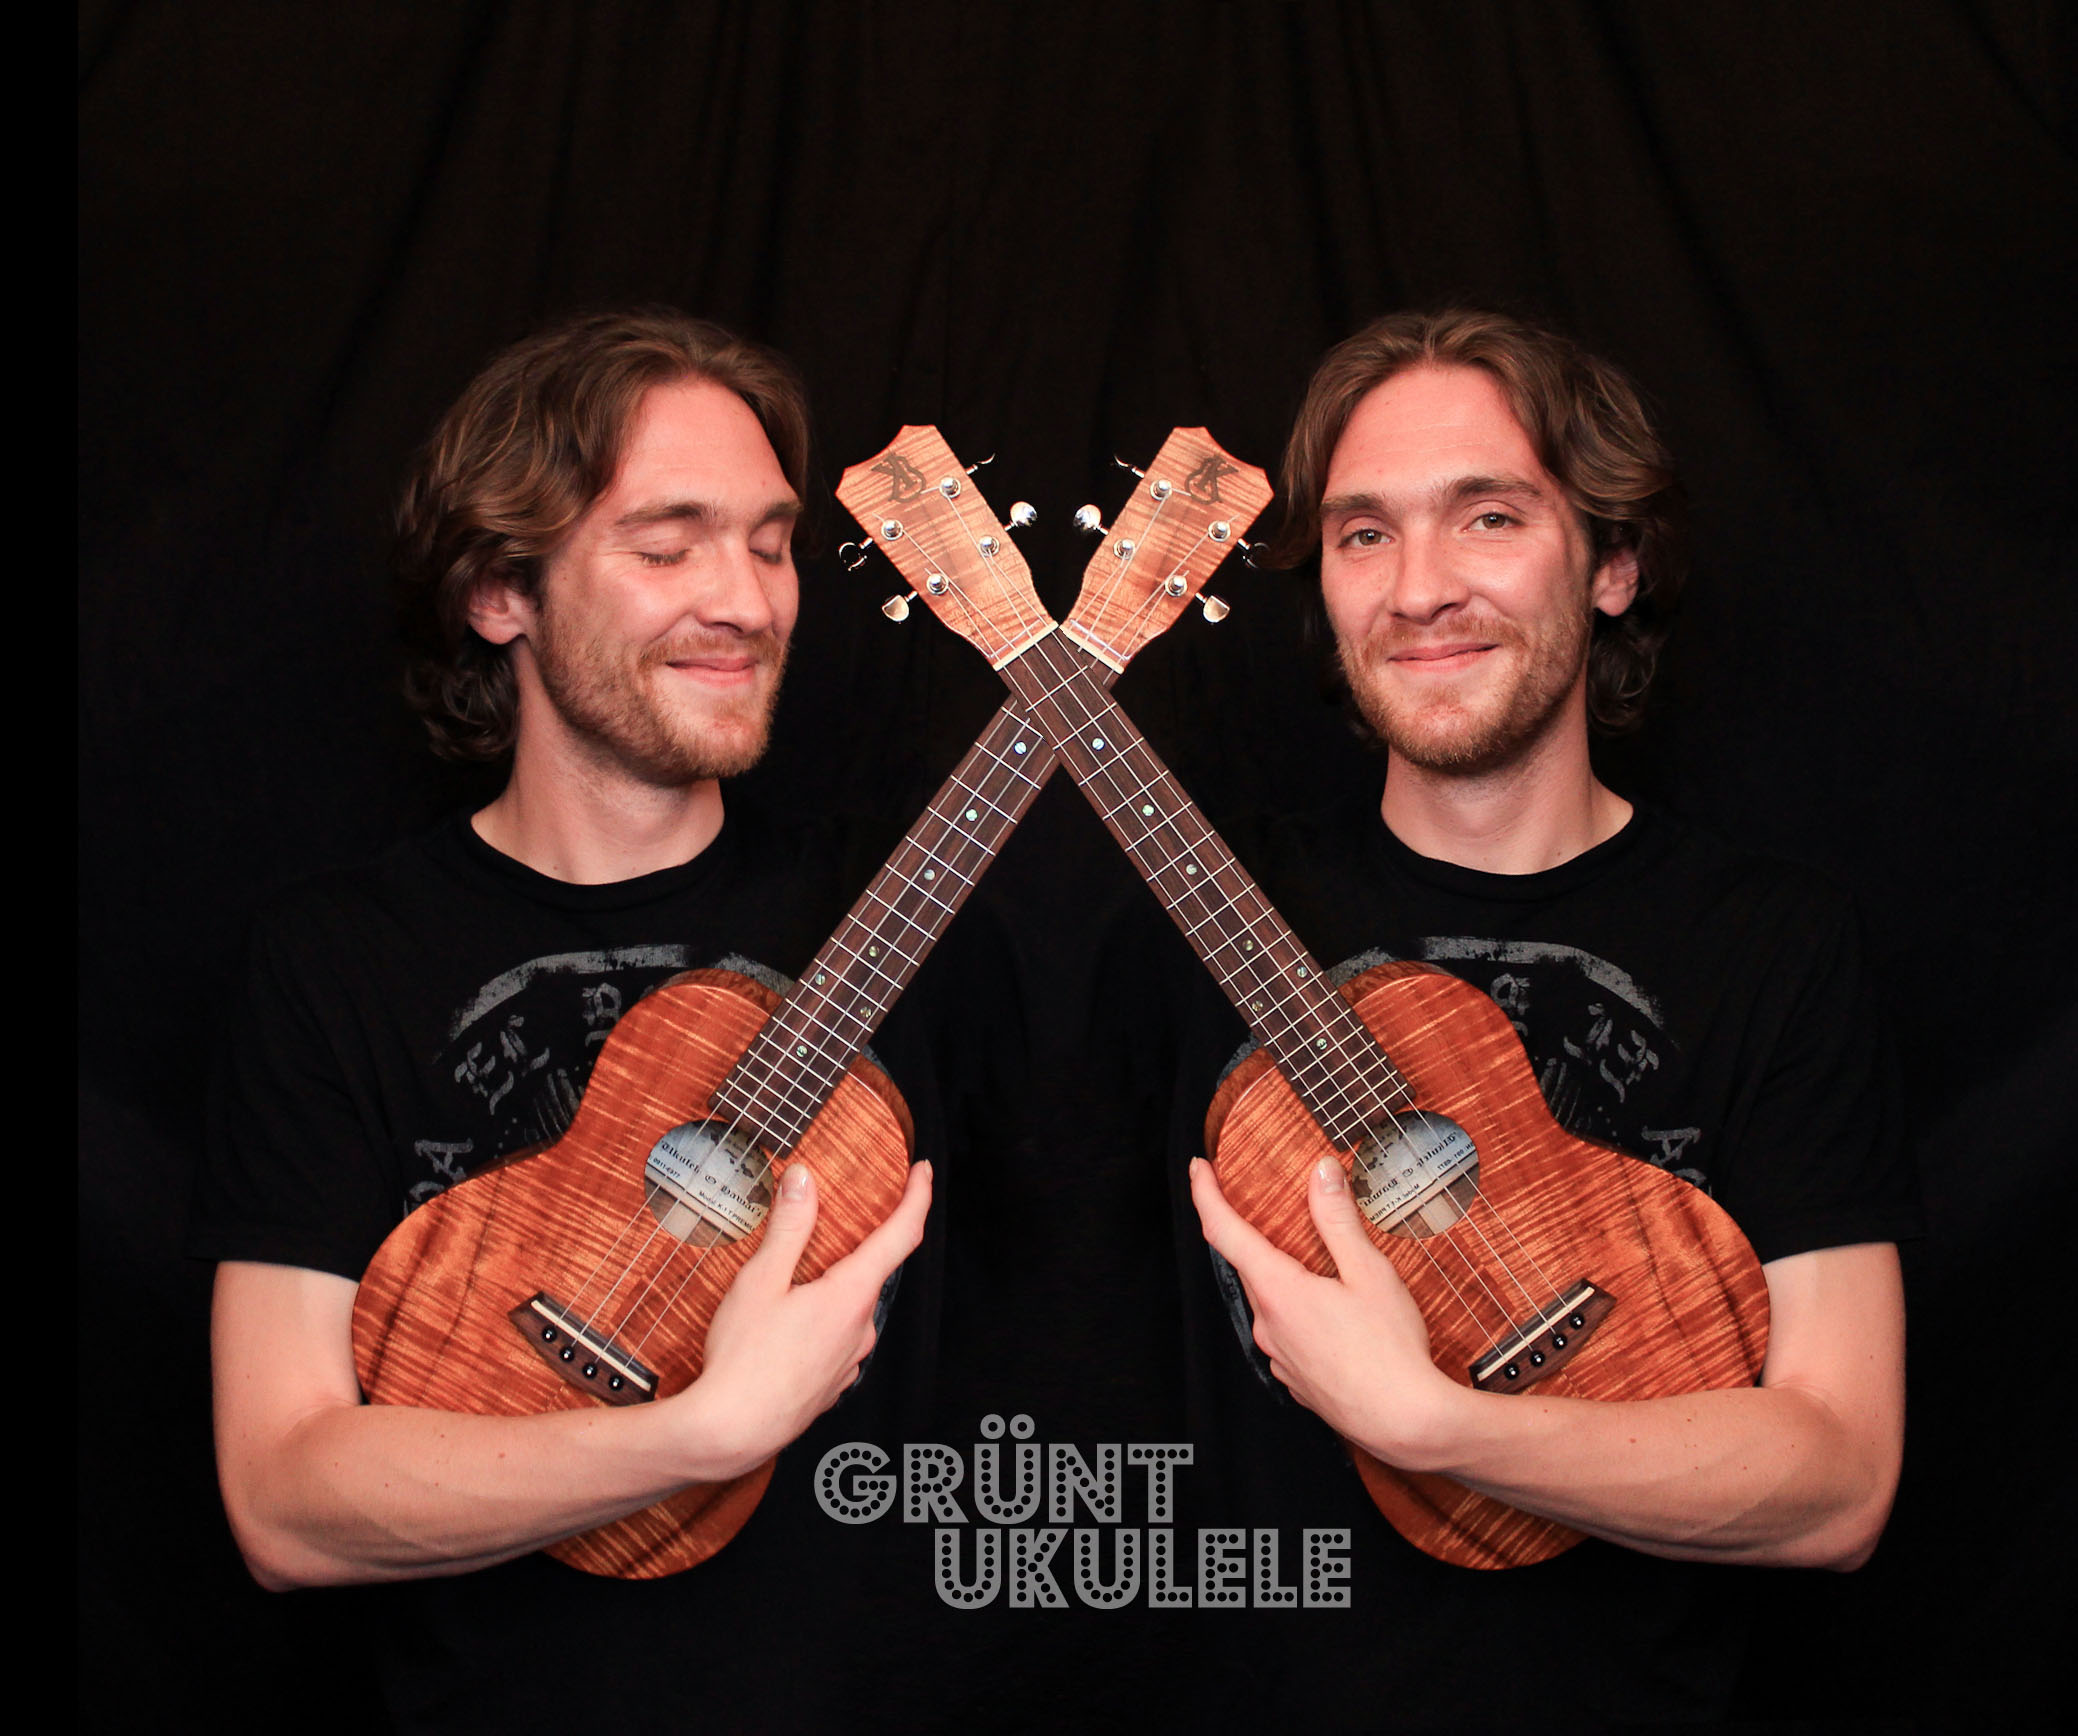 Adrien french ukulele player